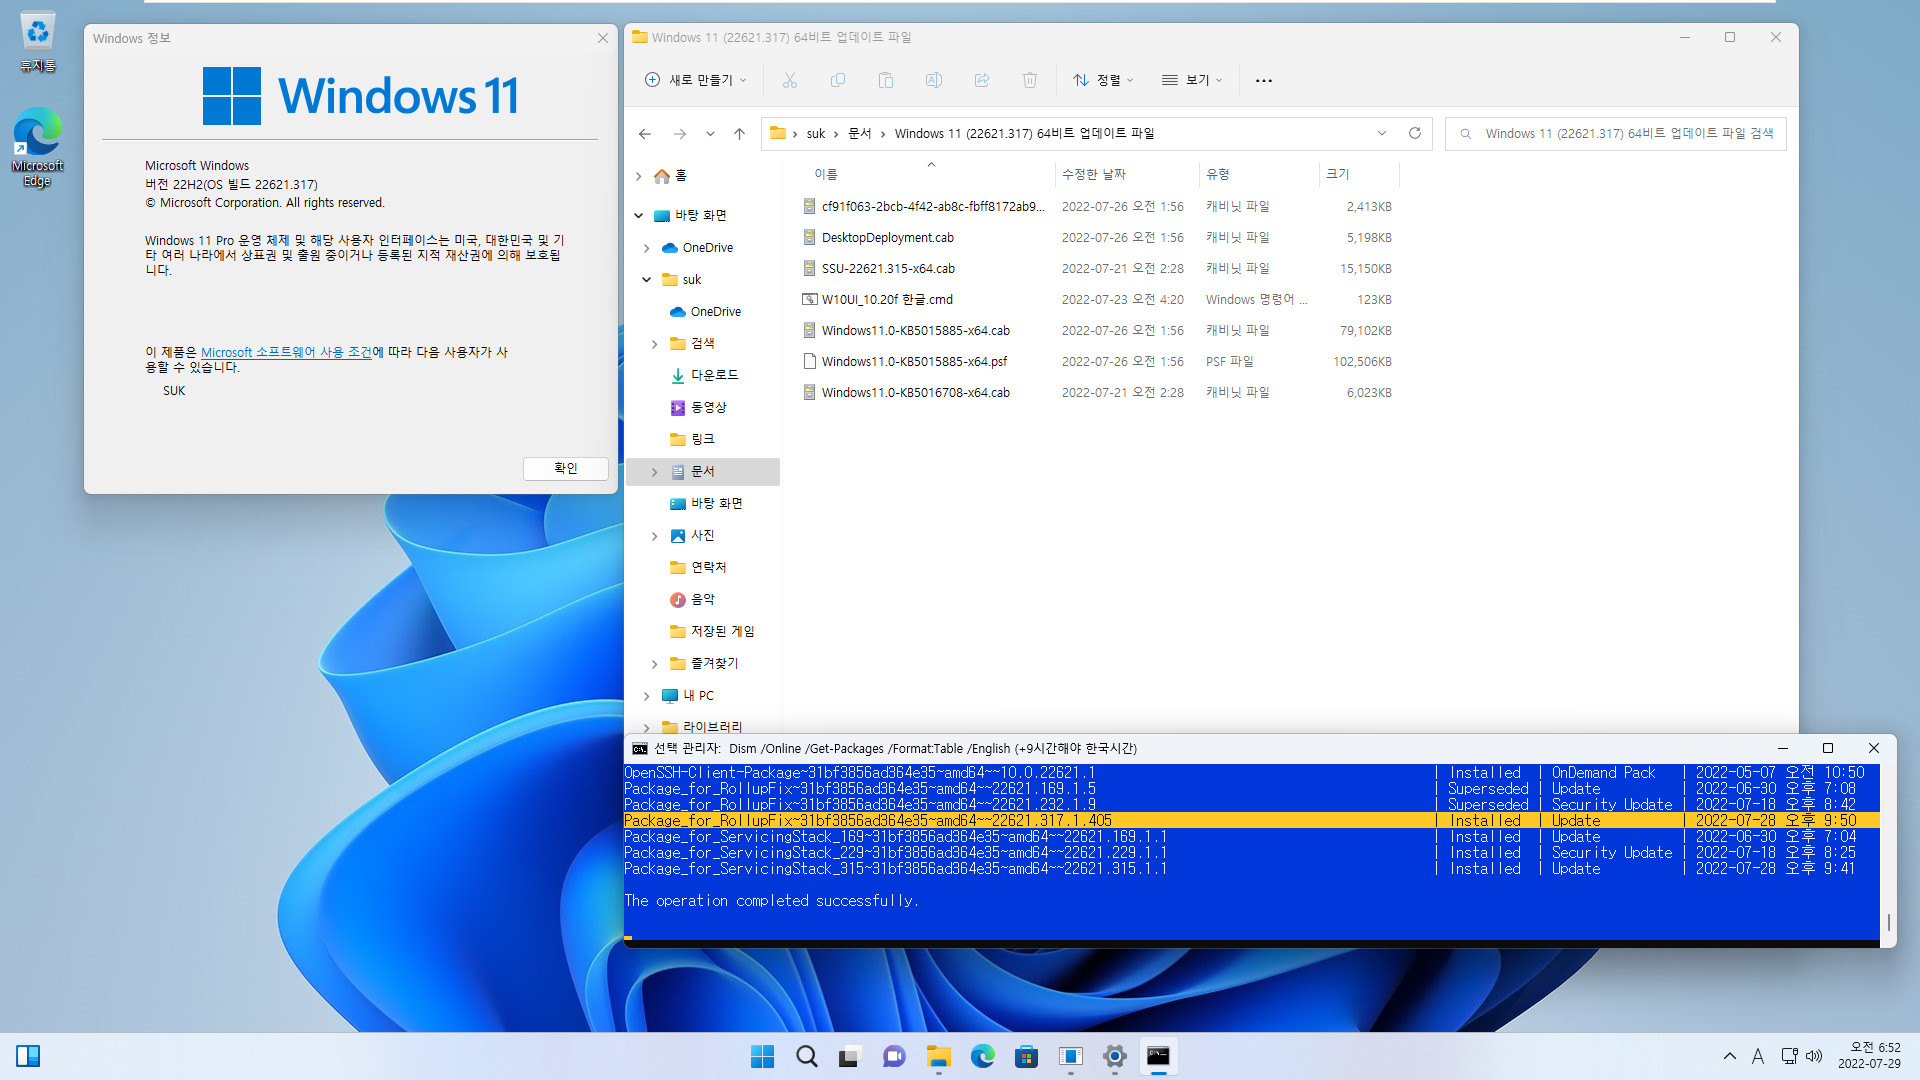 2022-07-29 금요일 - 릴리스 프리뷰 채널 - Windows 11 버전 22H2, 빌드 22621.317 - 누적 업데이트 KB5015885 - vmware에 설치 테스트 - 탐색기에 탭은 아직 생기지 않았네요 2022-07-29_065239.jpg